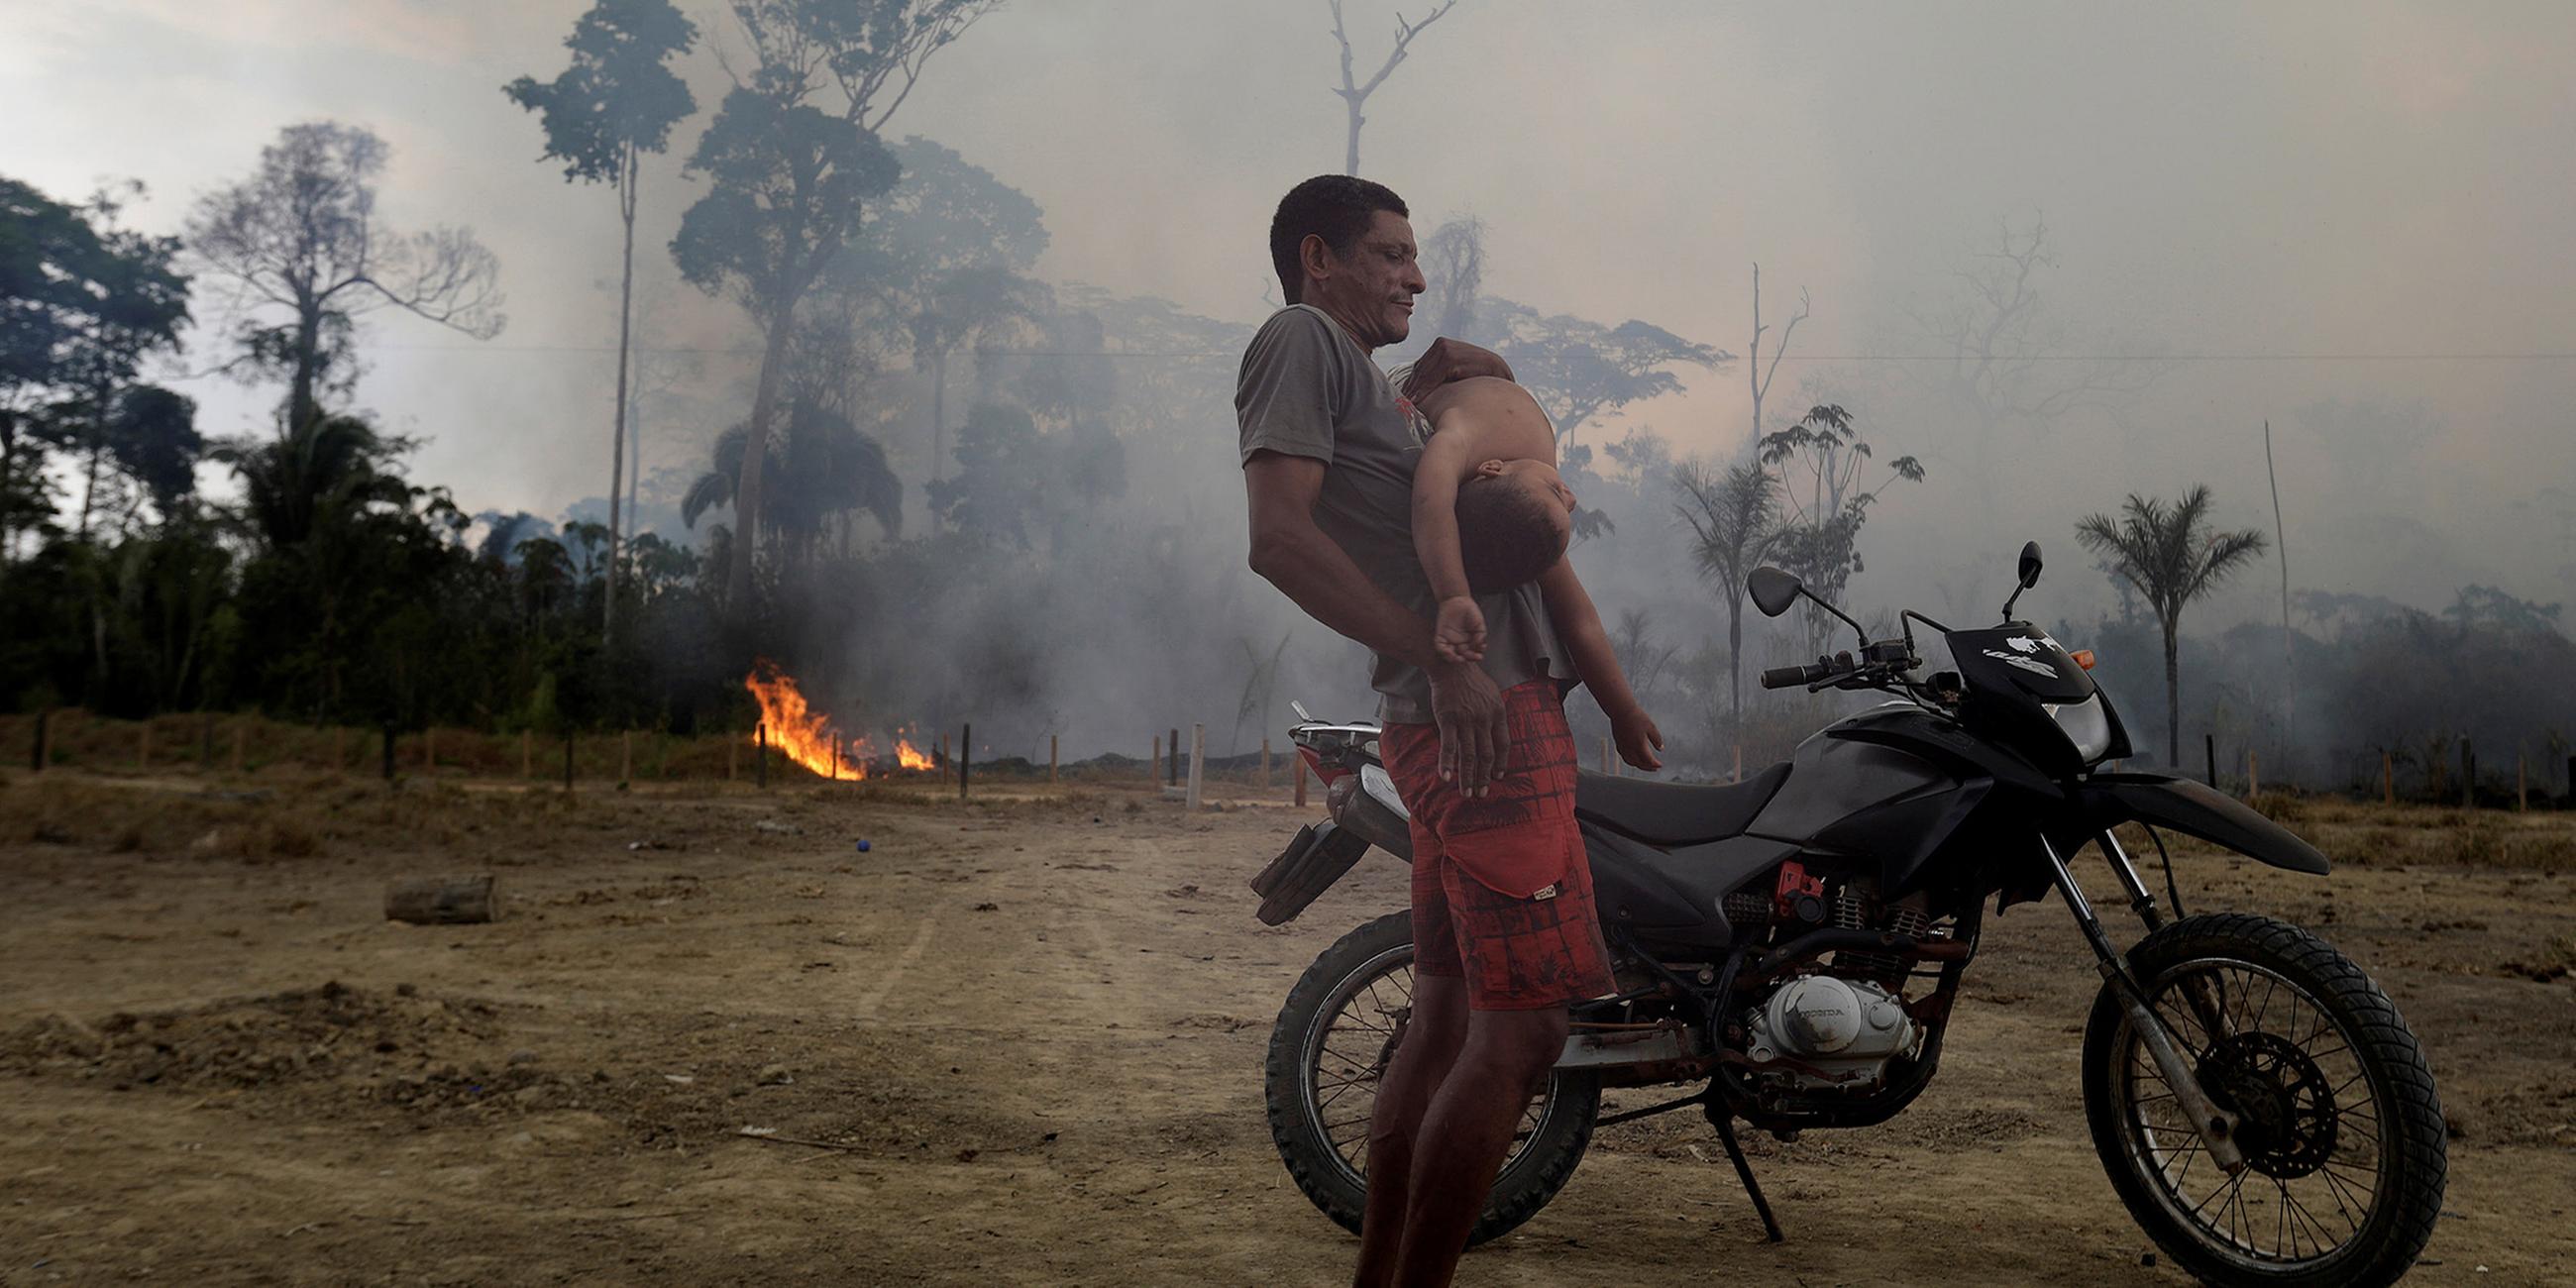 Anwohner umgeben von den Bränden im Amazonasgebiet am 27.07.2019 nah Porto Velho, Brasilien